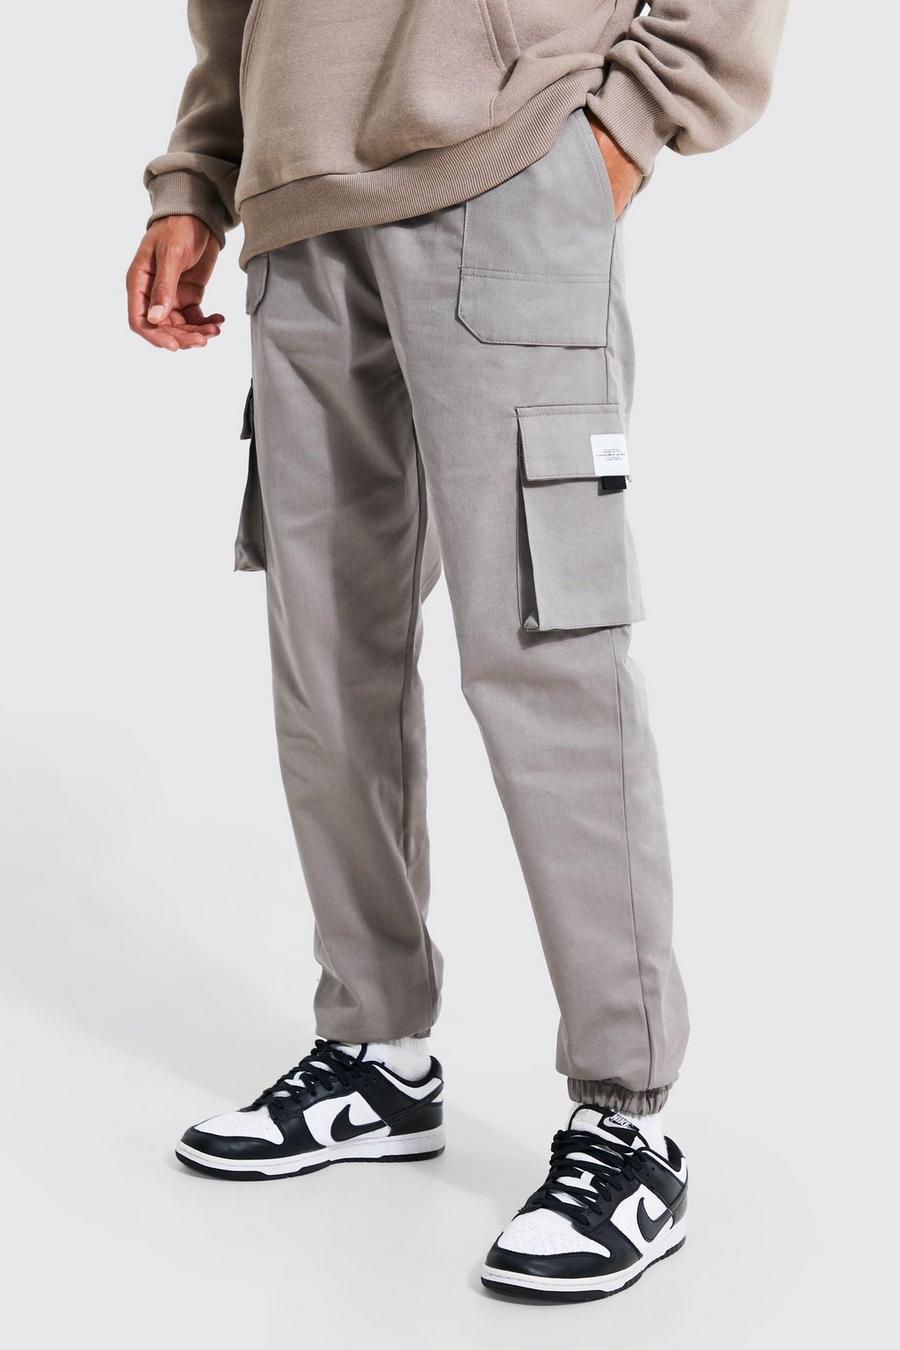 Pantalón deportivo Tall cargo de sarga con cinturón y etiqueta, Gris